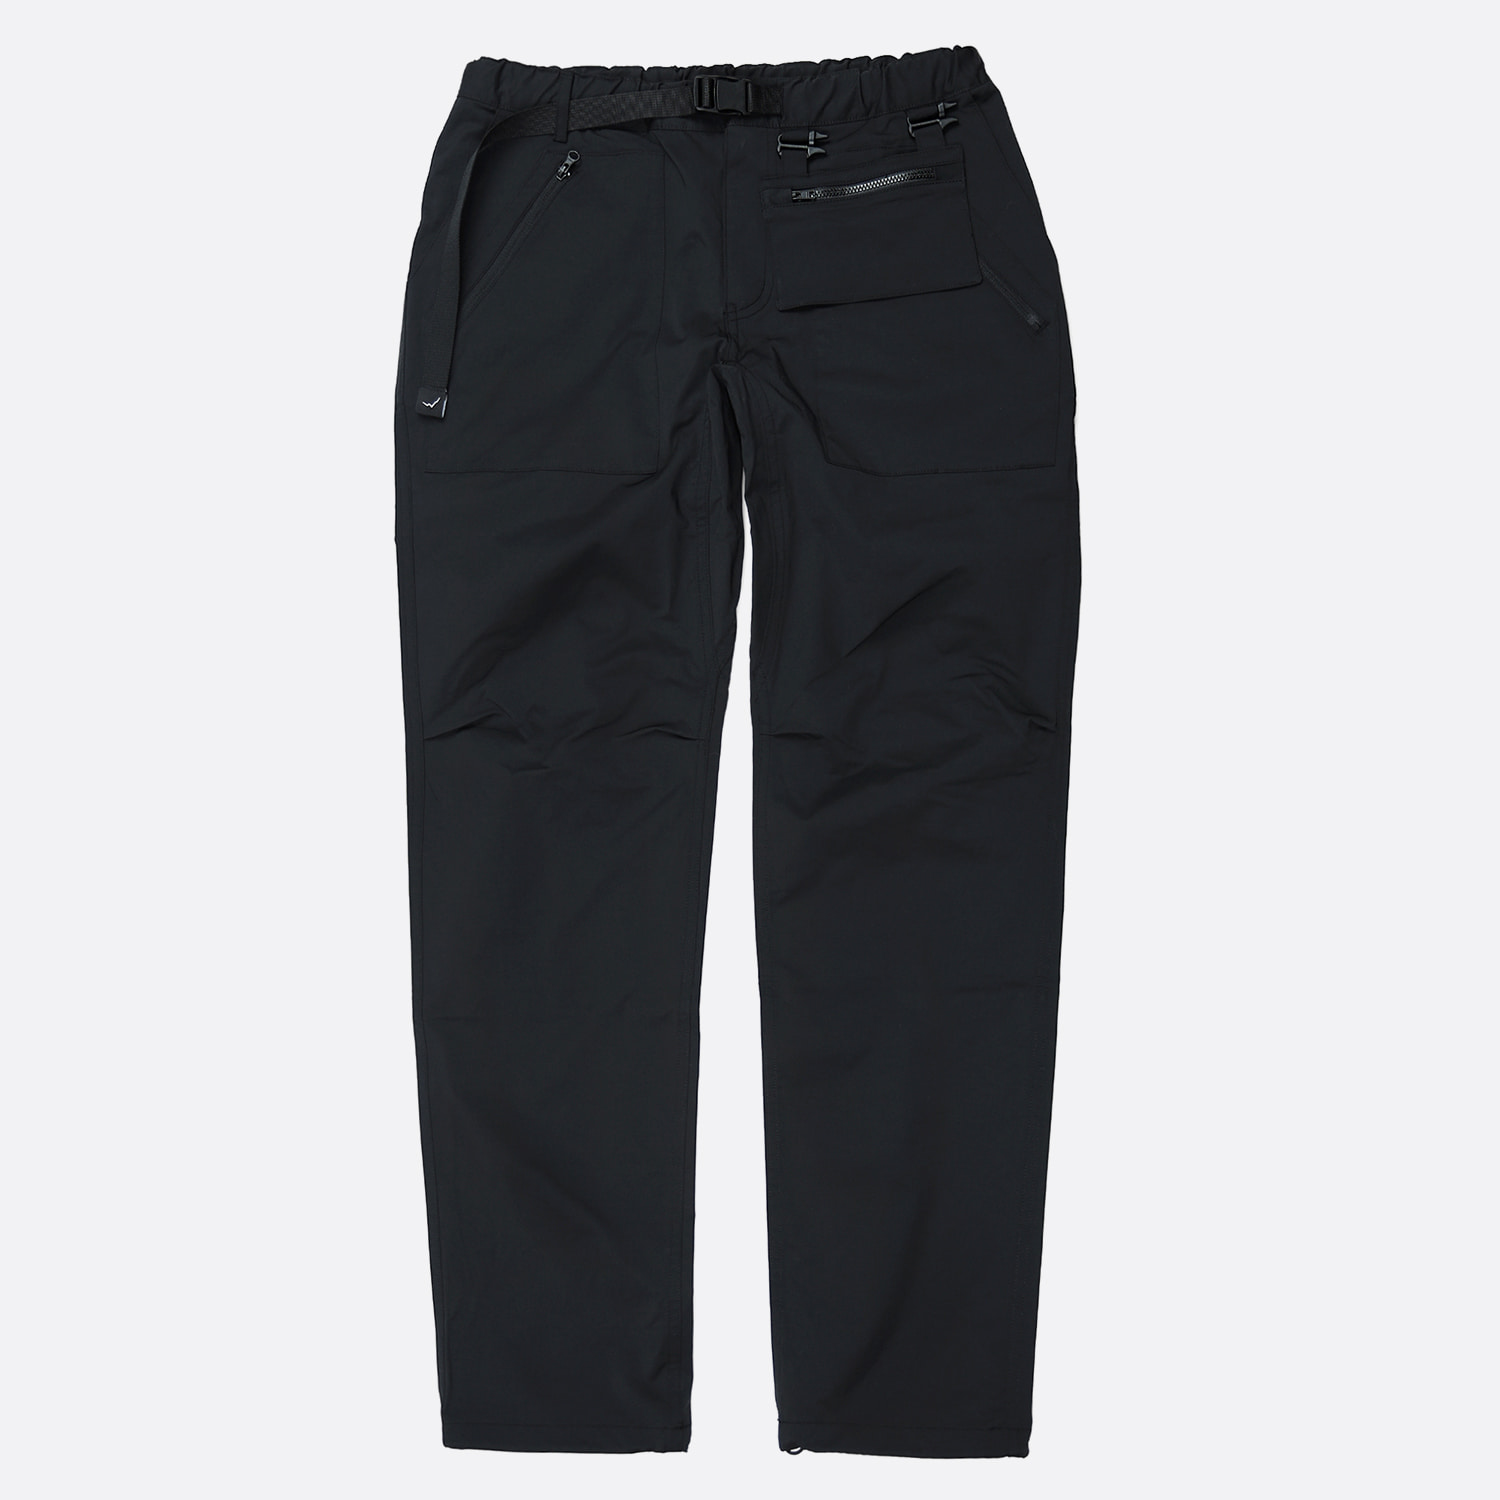 [Cayl] Mountain Pants 2 Black